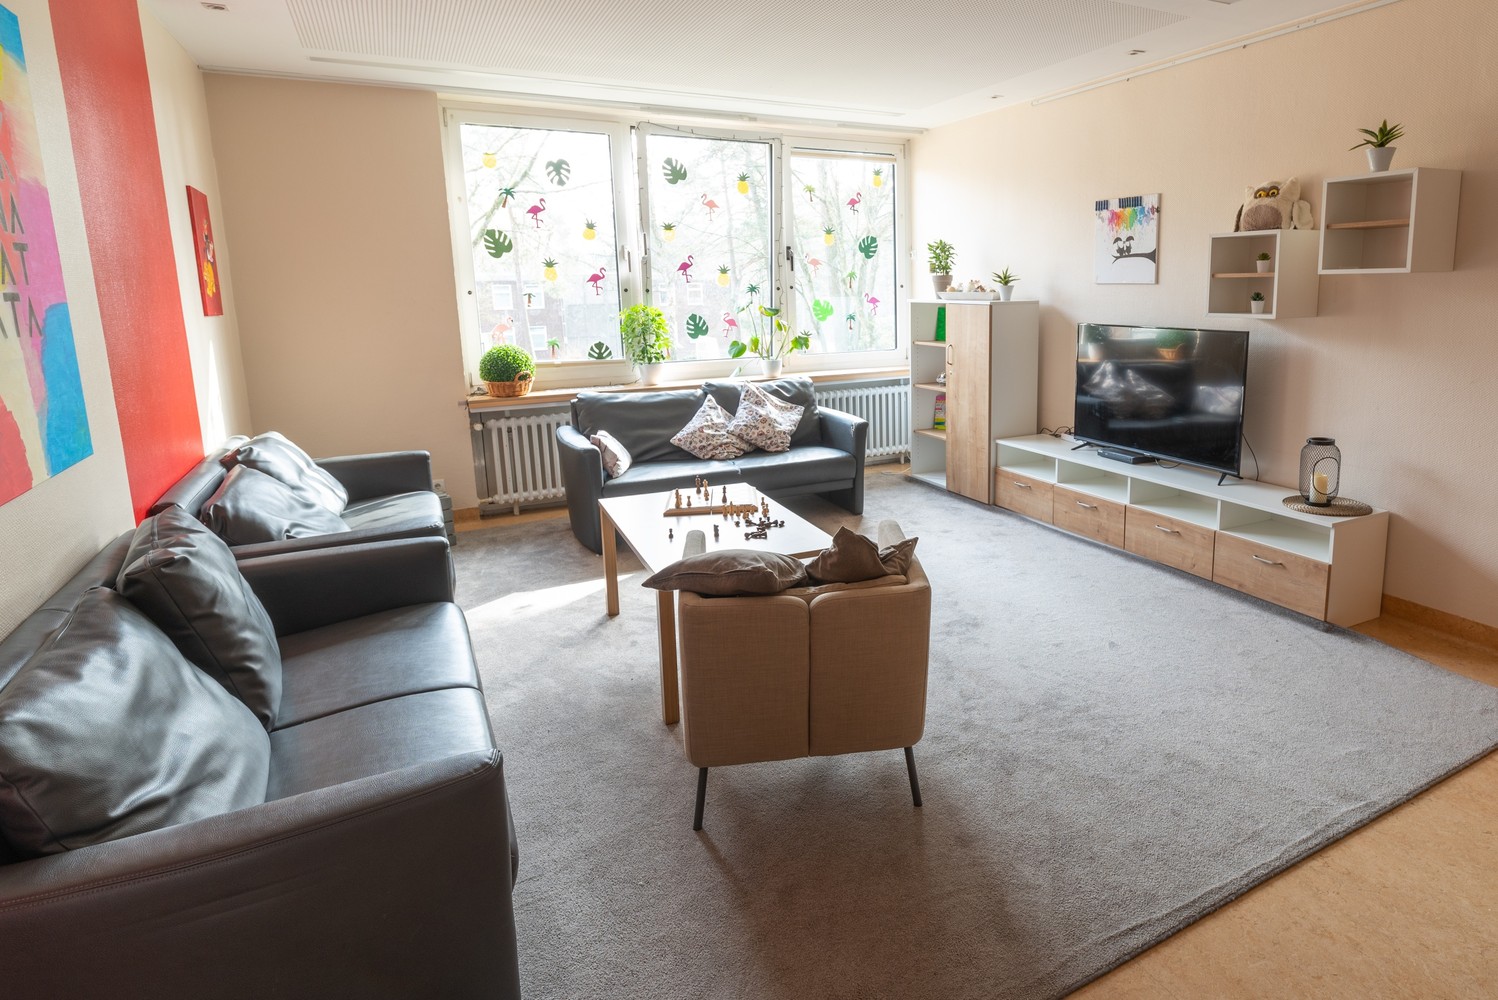 Das Bild zeigt einen hellen, großen Raum mit mehreren Sofas, einem grauen Teppich und einem Fernseher.